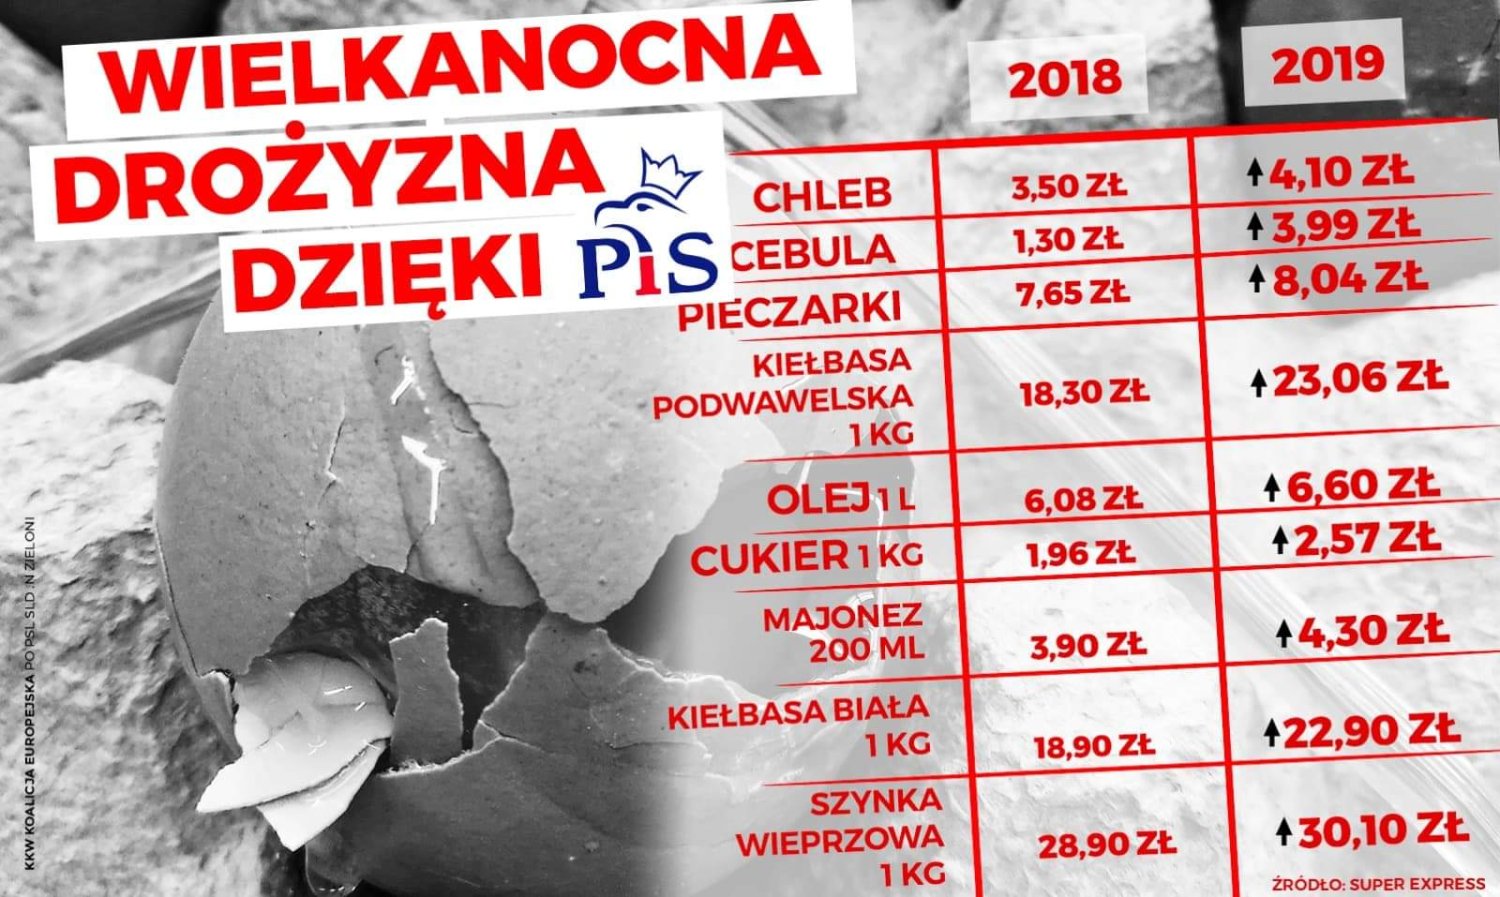 Wielkanocna drożyzna dzięki PiS" - PO odpowiada na zarzuty. Ceny na święta | INNPoland.pl